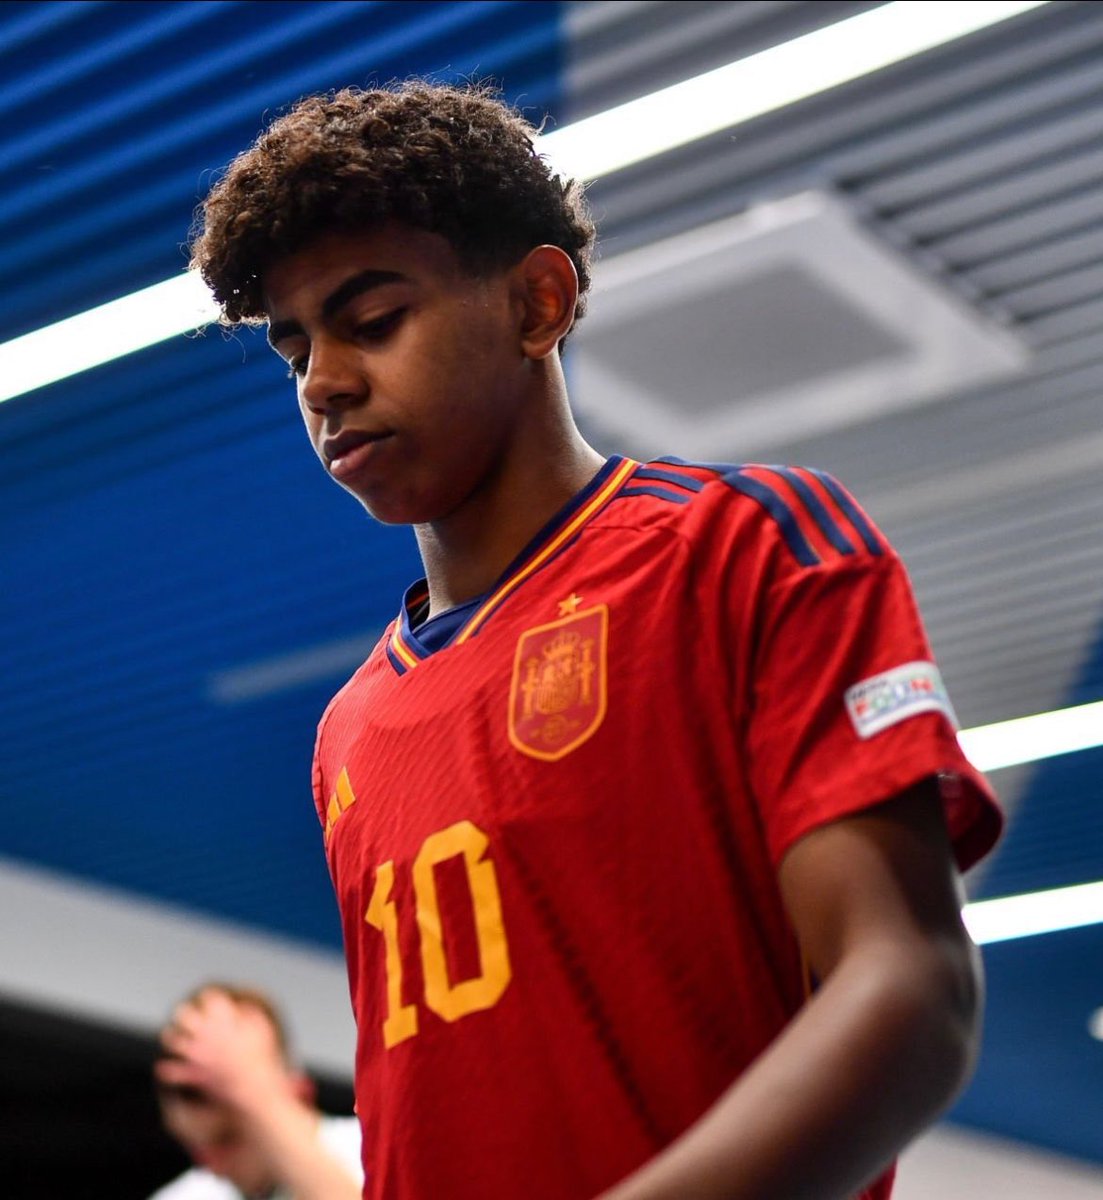 LAMINE YAMAL BUTEUR AVEC LA ROJA !!! ⚽️🇪🇸

À 16 ans, il devient le plus jeune joueur à porter le maillot de la sélection espagnole… et à marquer ! 👏